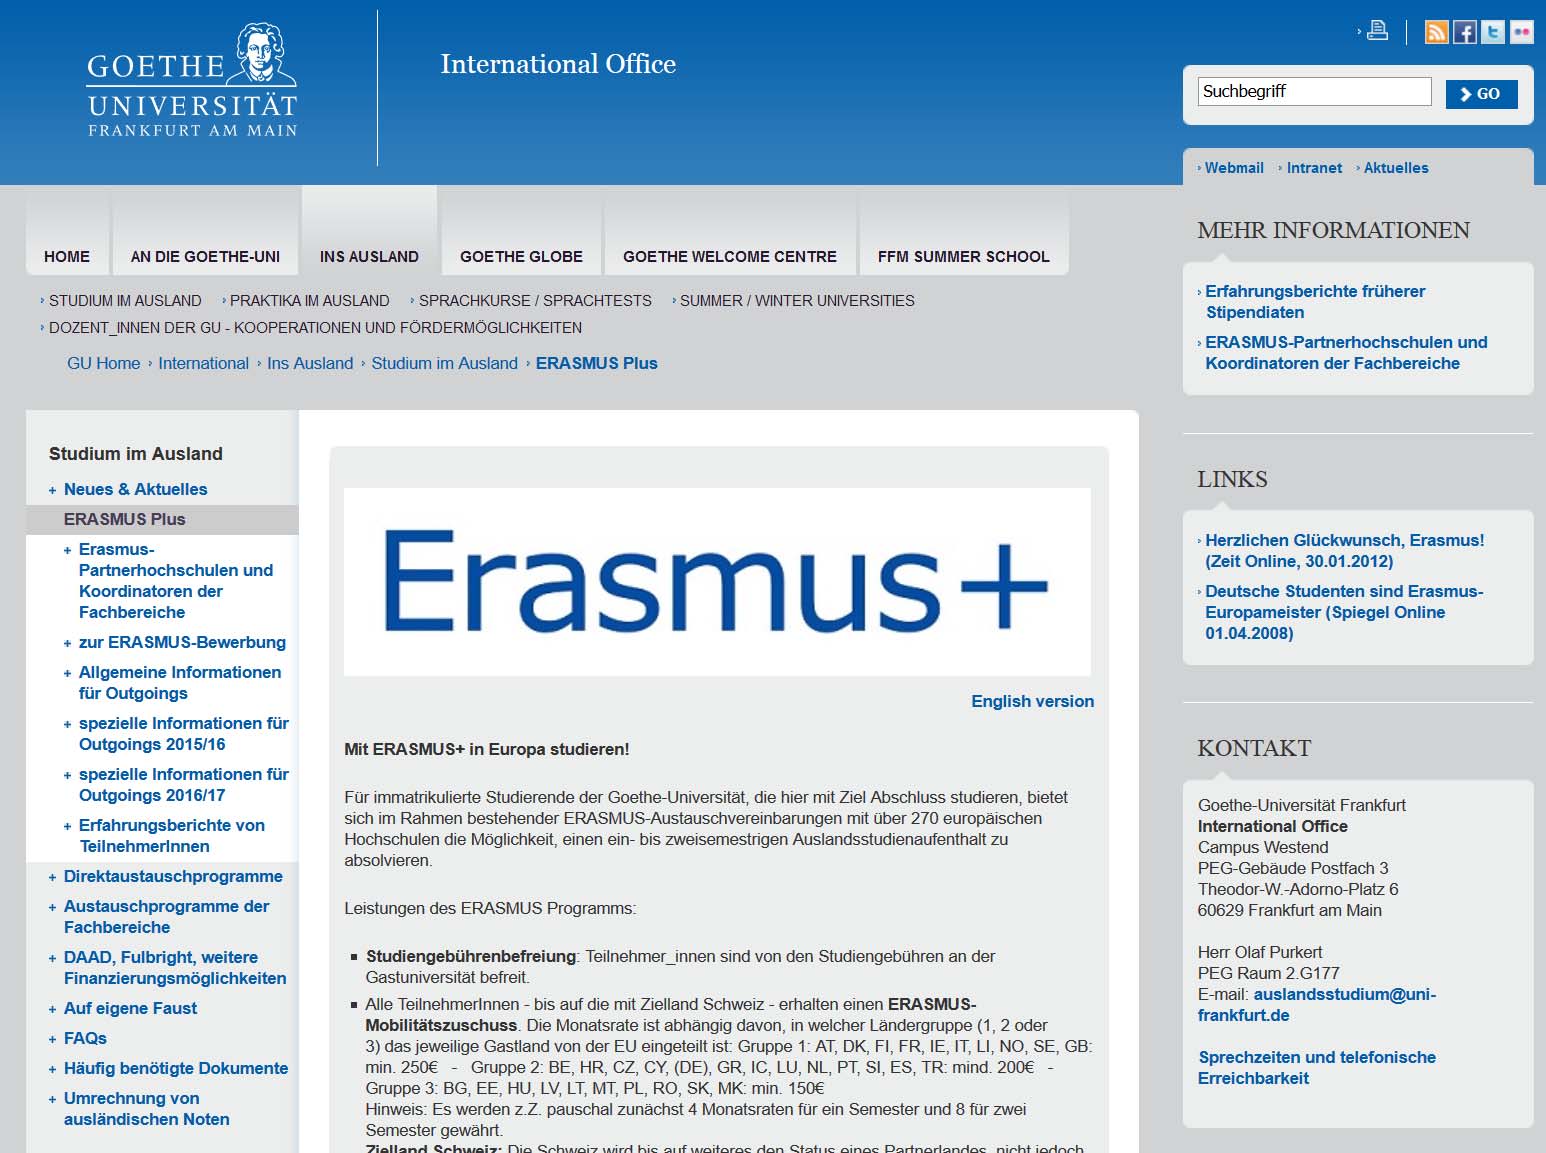 ERASMUS+-Auslandsstudium: Vorbereitung http://www.